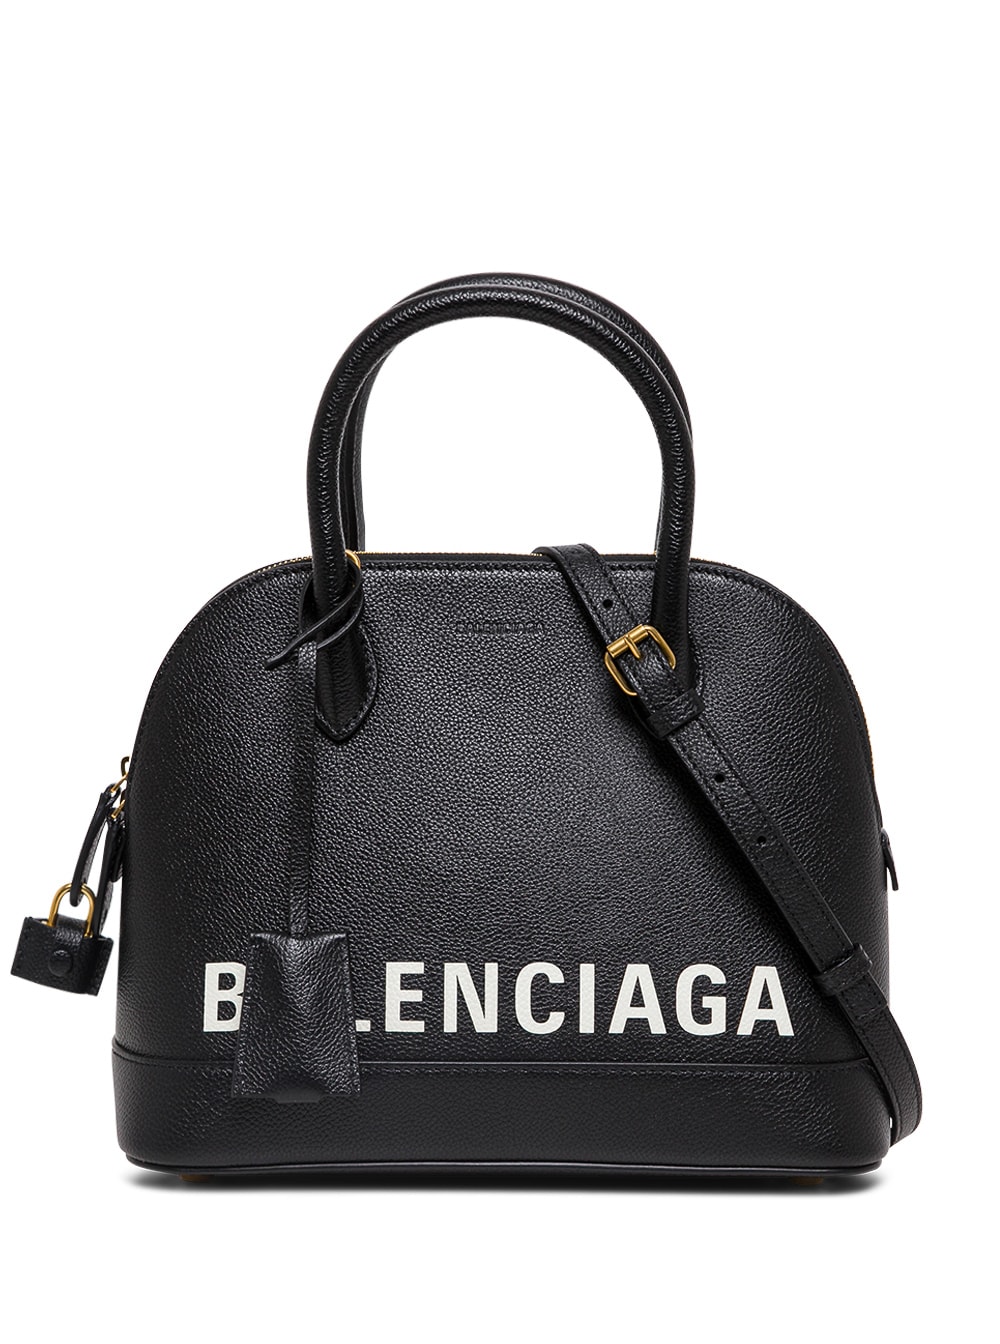 Balenciaga Ville Black Leather Handbag With Logo Print